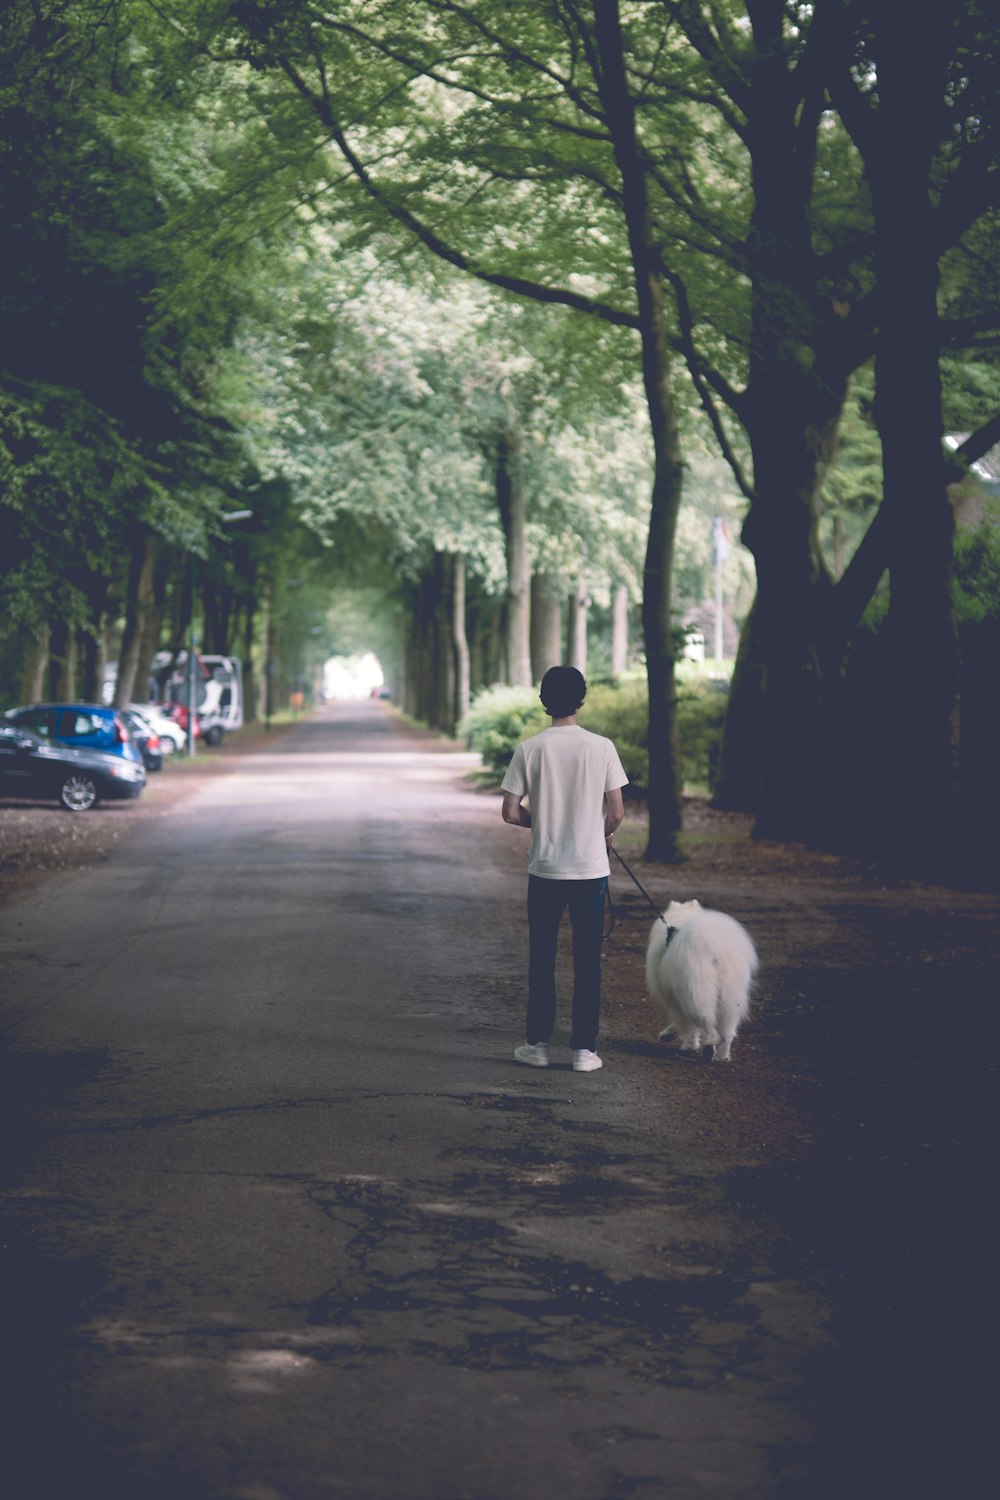 나무가 늘어선 거리를 따라 개를 산책시키는 남자